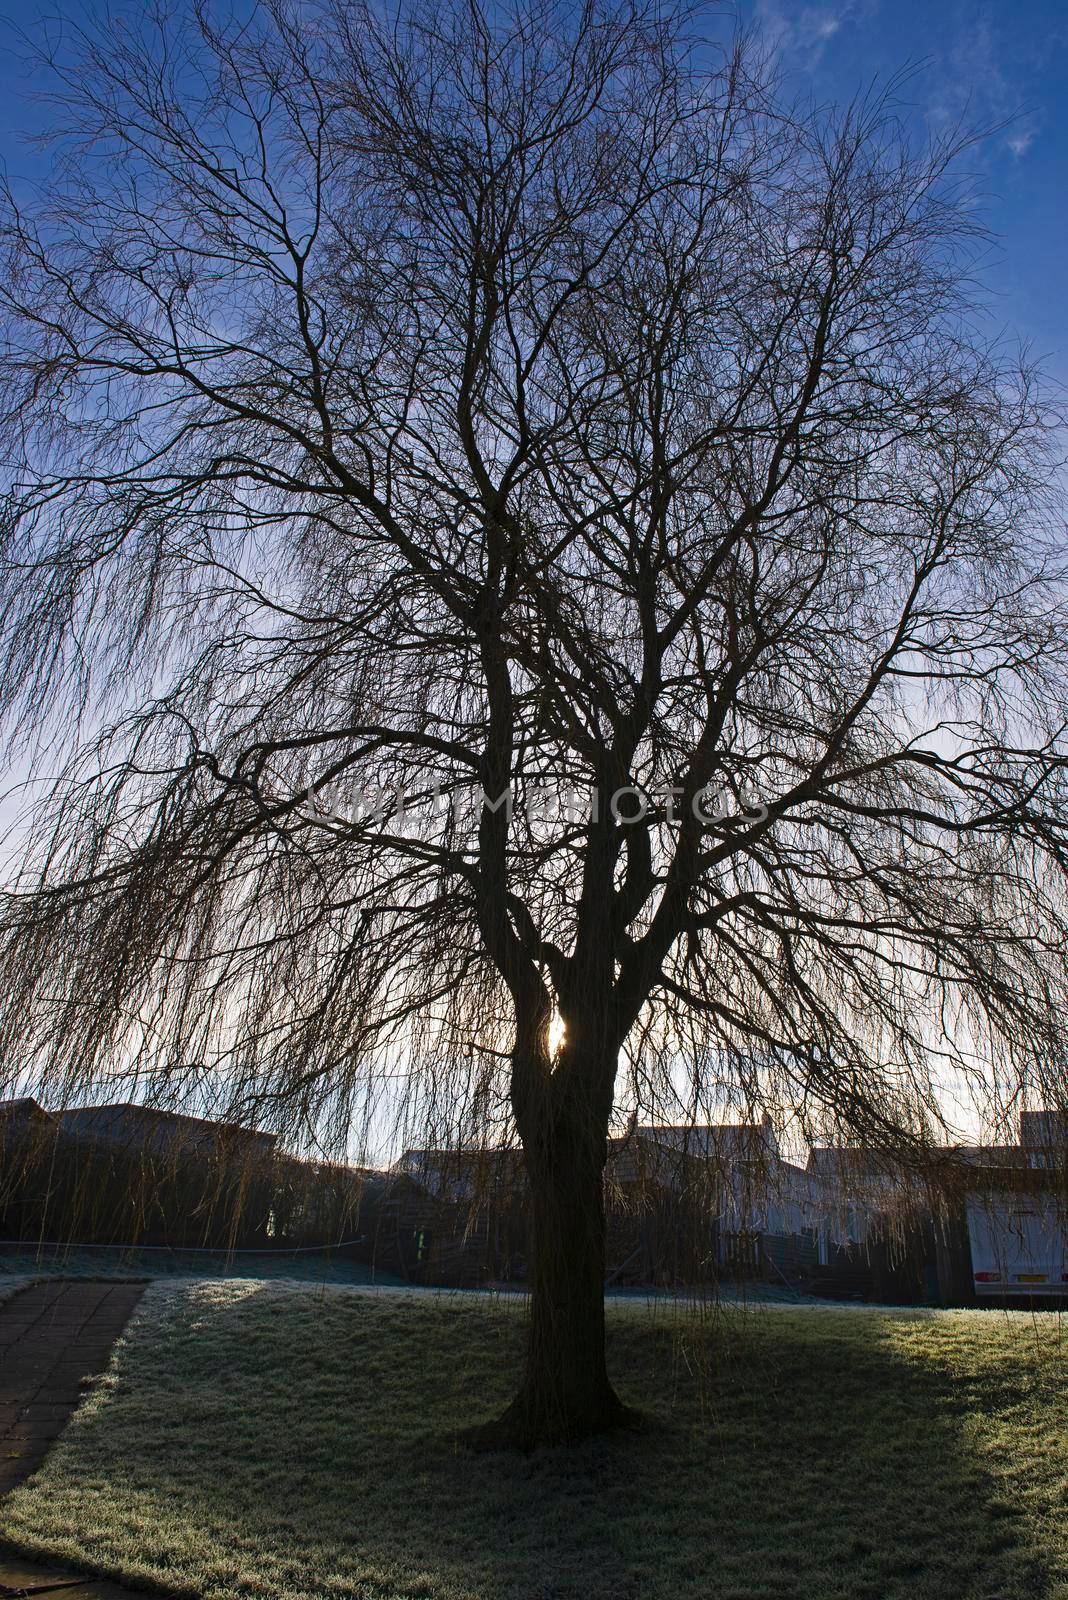 Bare weeping willow tree in rural garden in winter by paulvinten